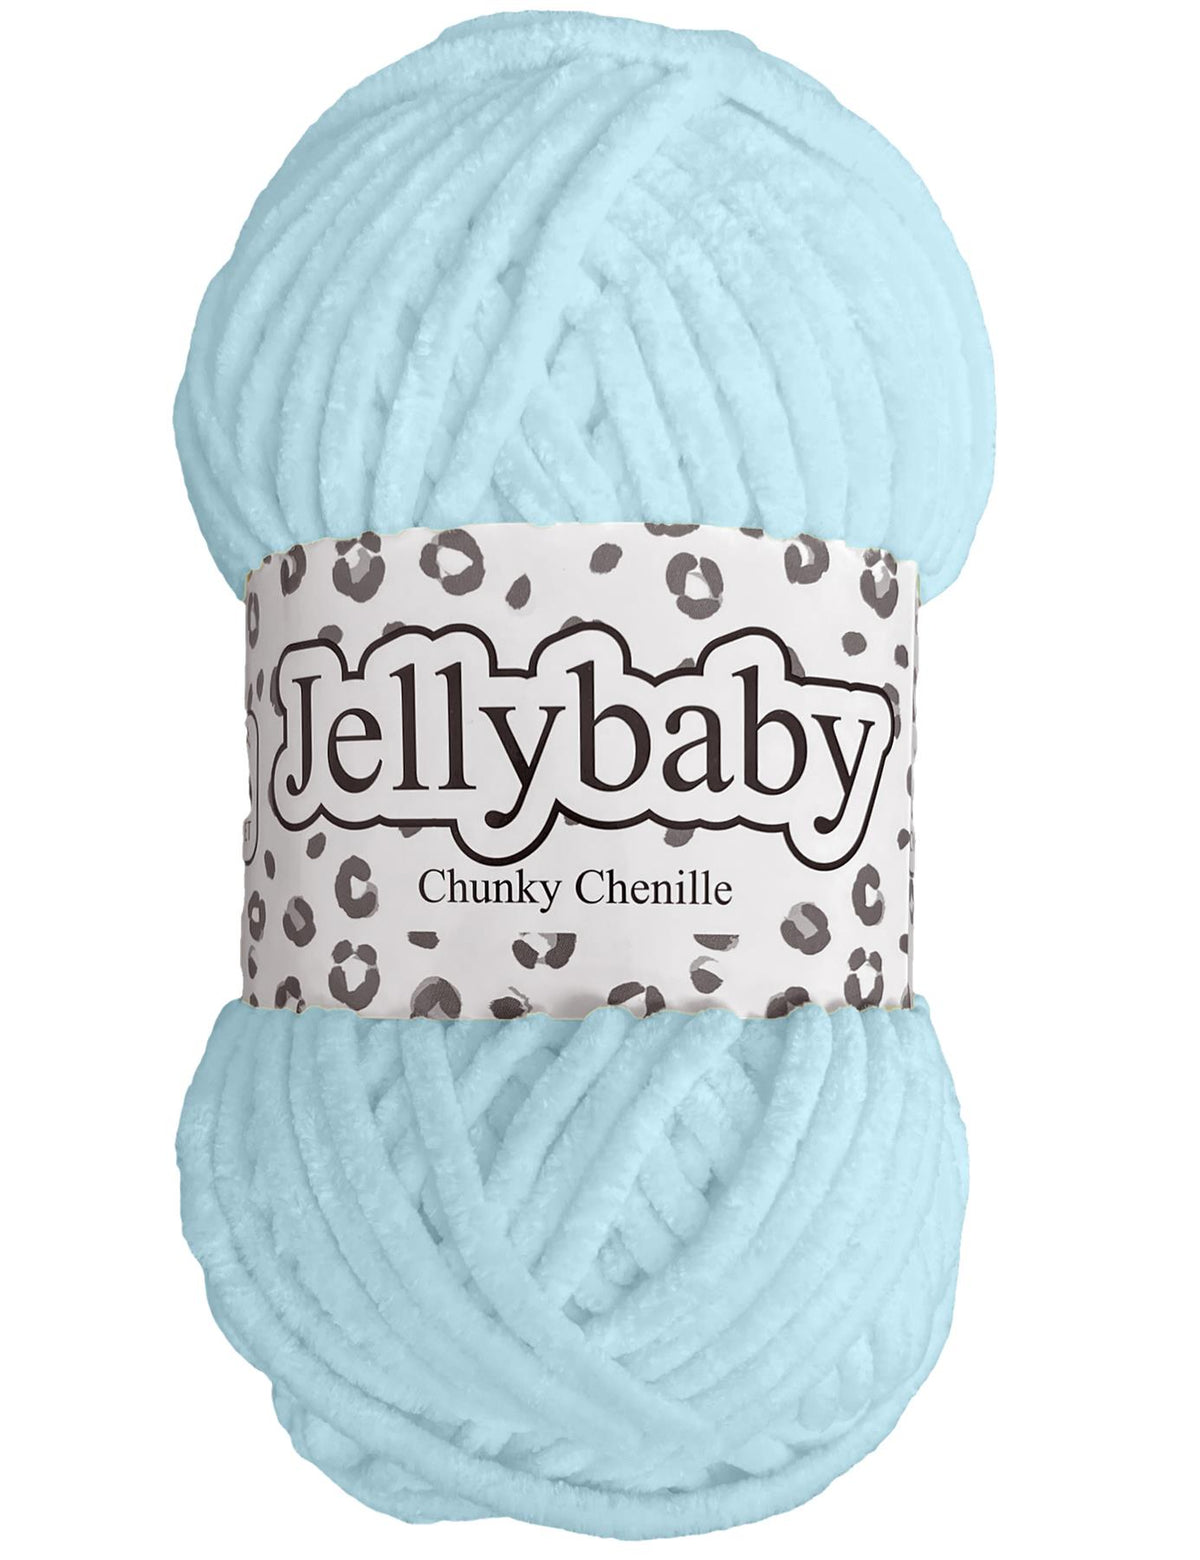 Cygnet Jellybaby Chenille Chunky Powder Blue (006) -100g